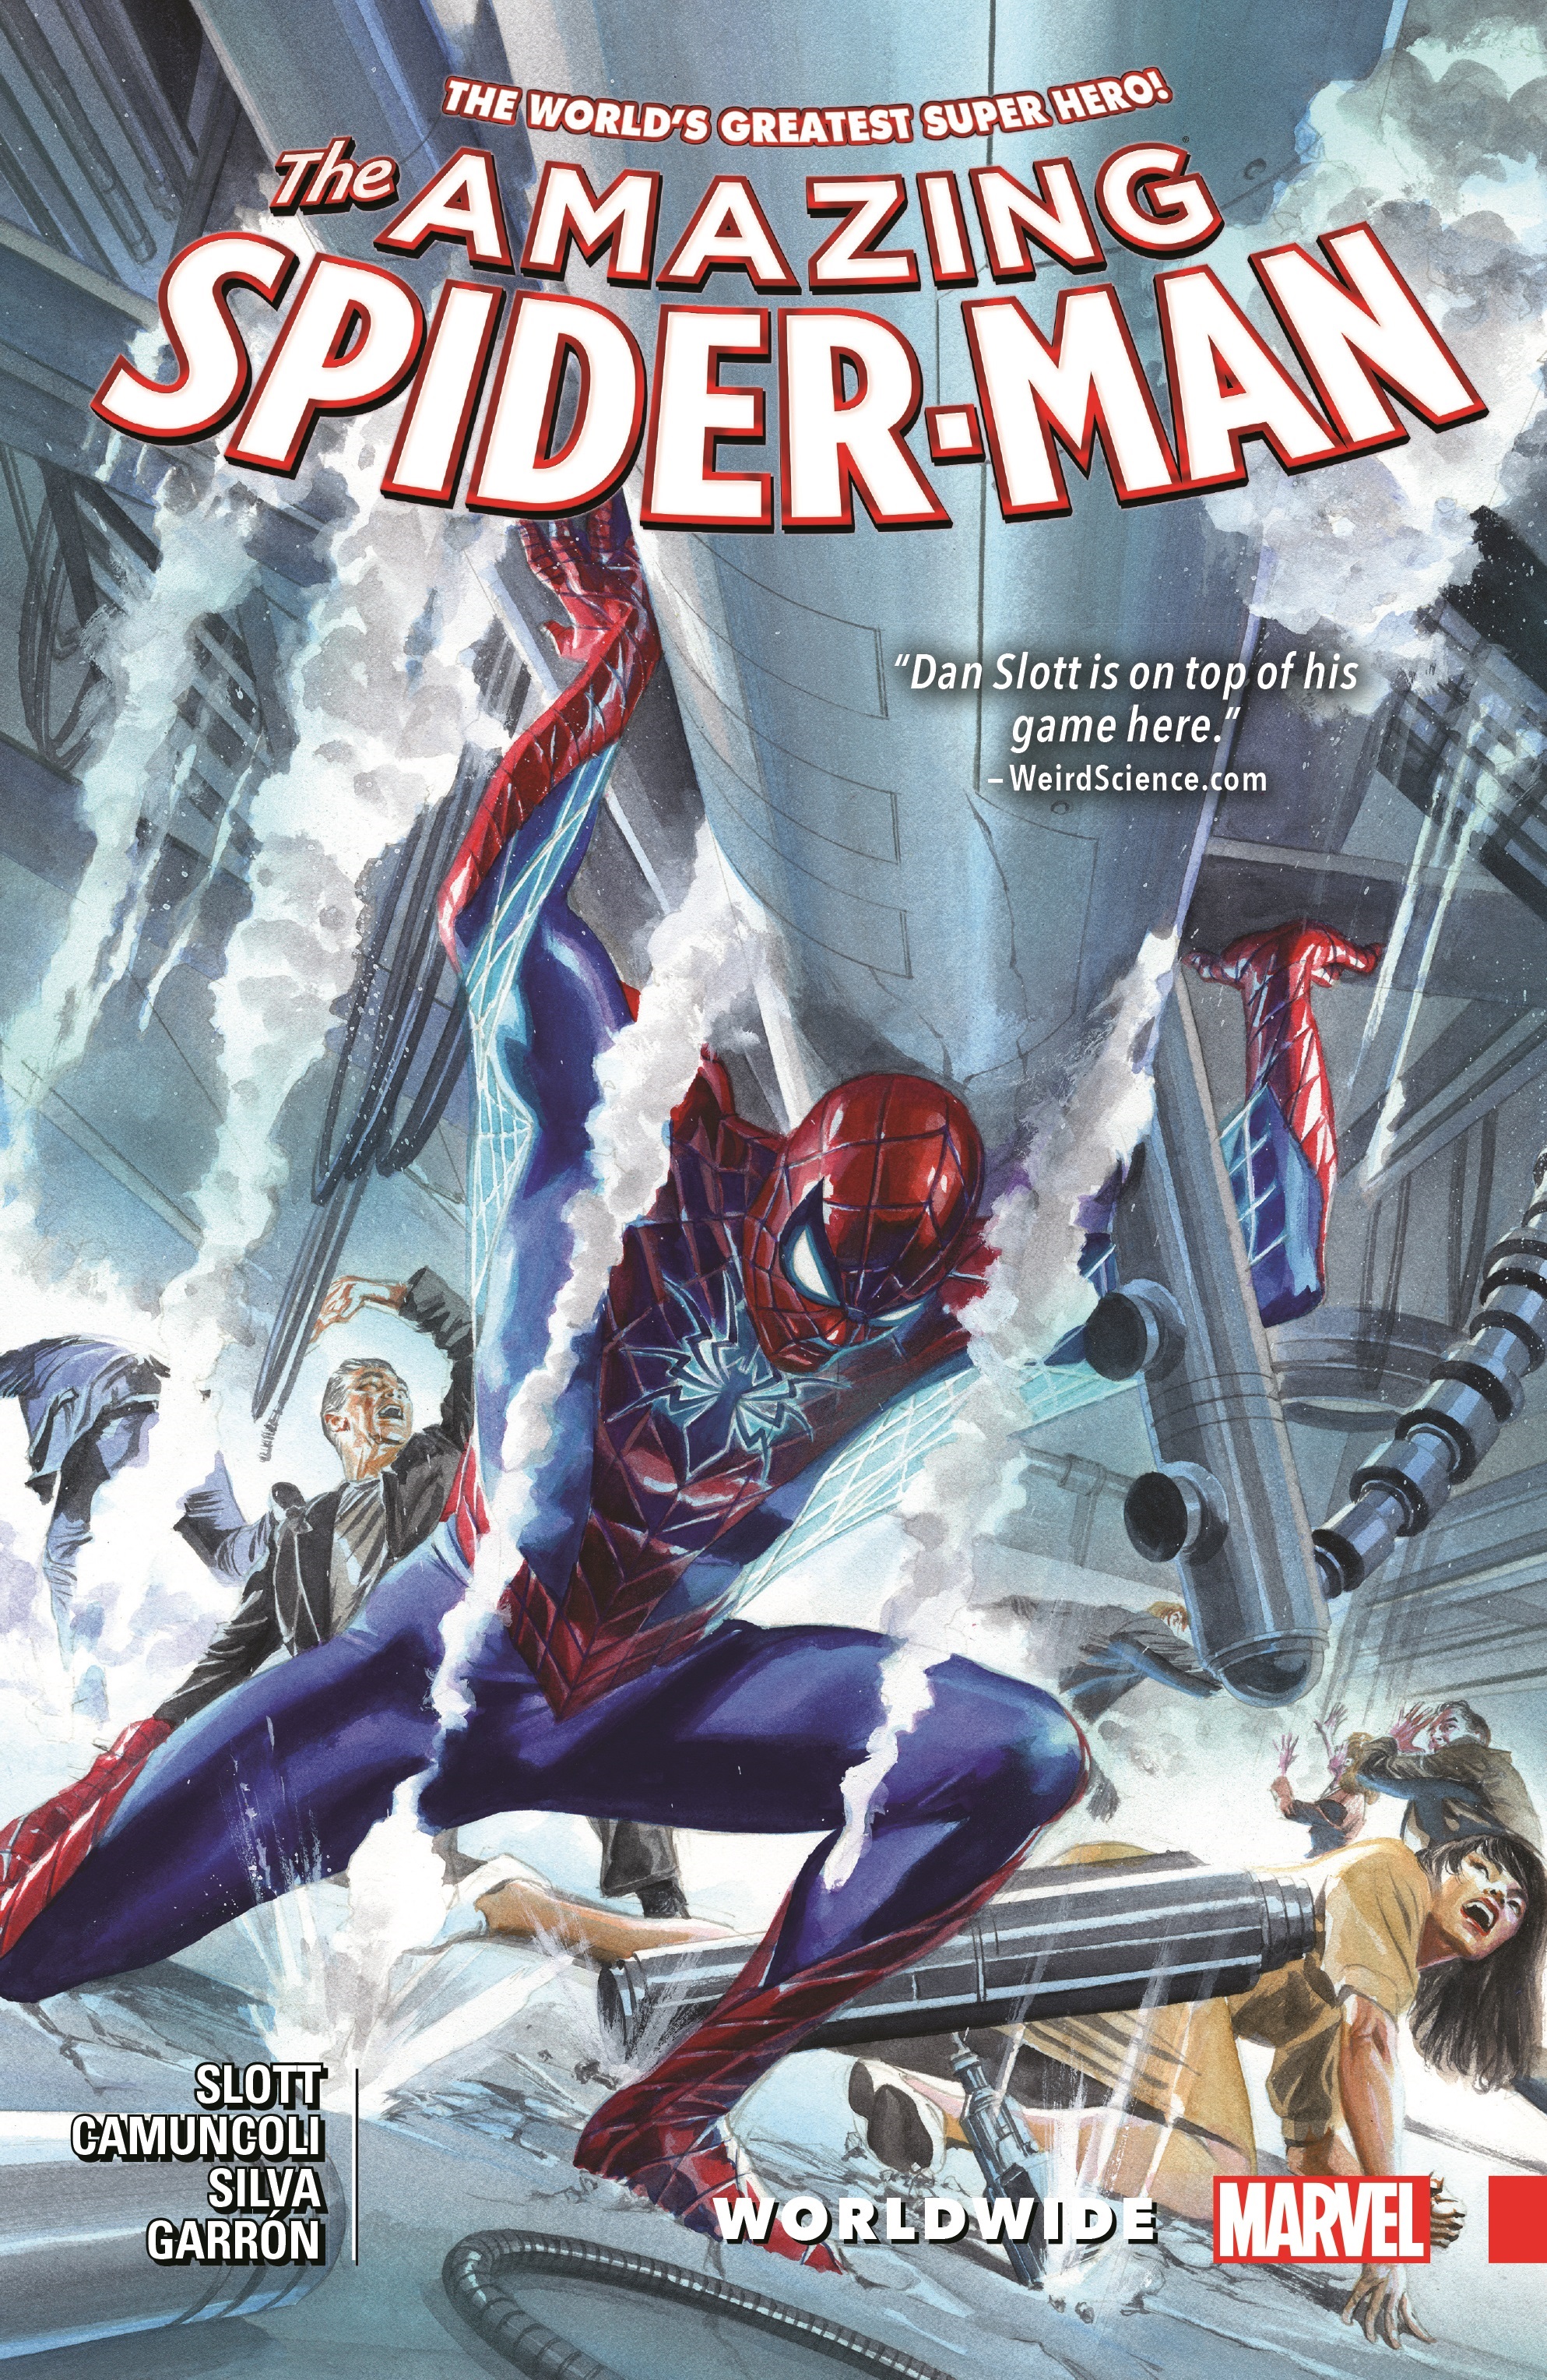 Aire acondicionado cámara ficción Amazing Spider-Man: Worldwide Vol. 4 (Trade Paperback) | Comic Issues |  Comic Books | Marvel